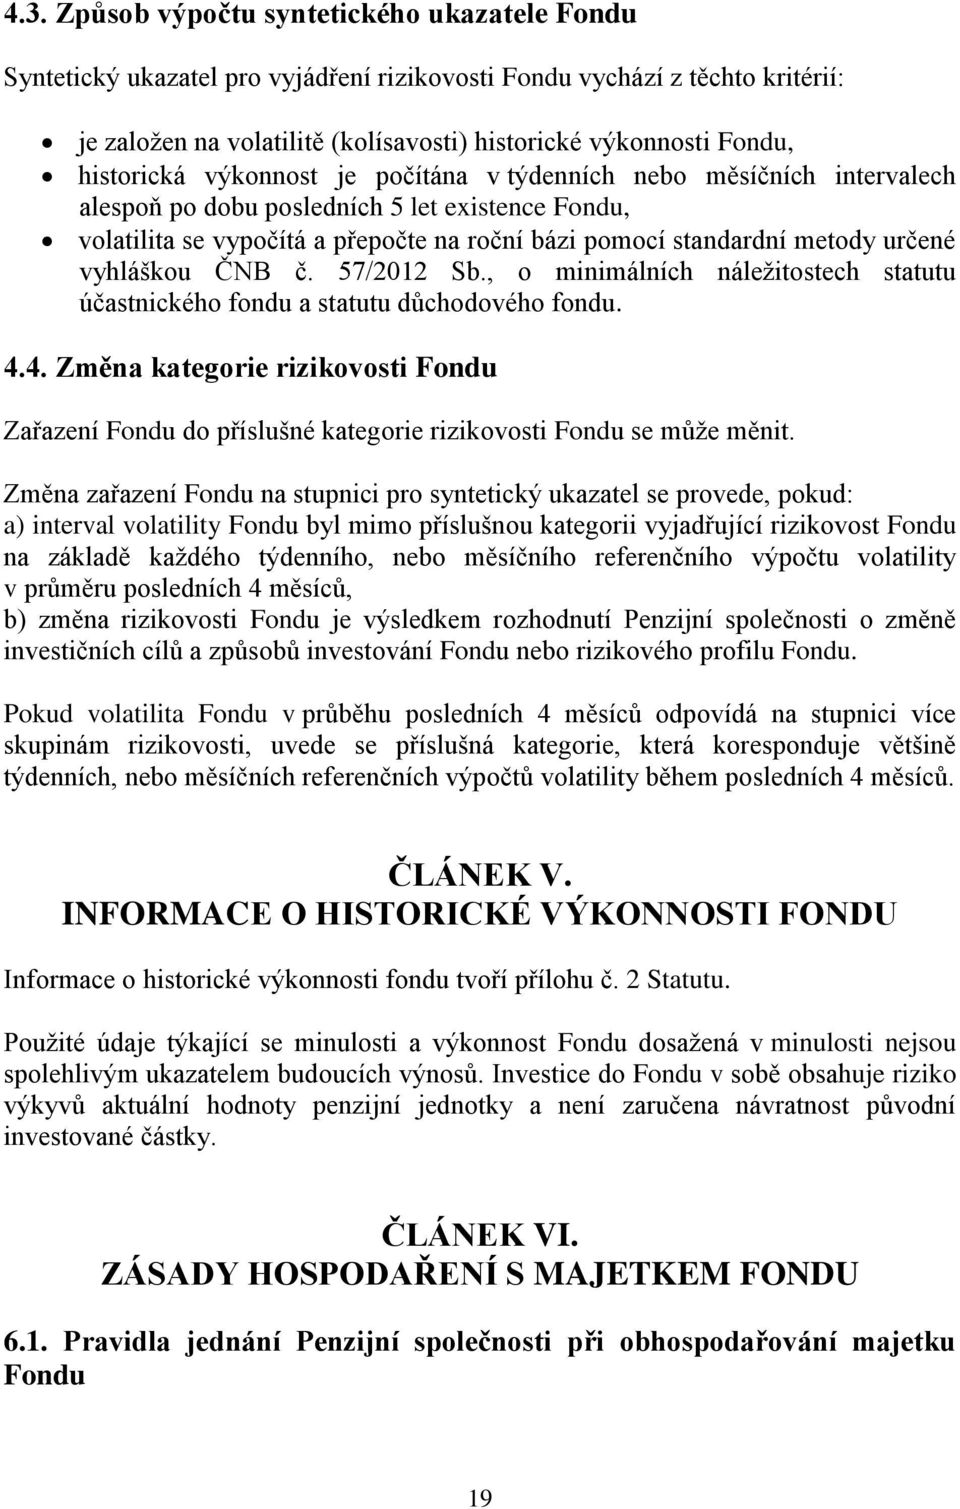 určené vyhláškou ČNB č. 57/2012 Sb., o minimálních náležitostech statutu účastnického fondu a statutu důchodového fondu. 4.